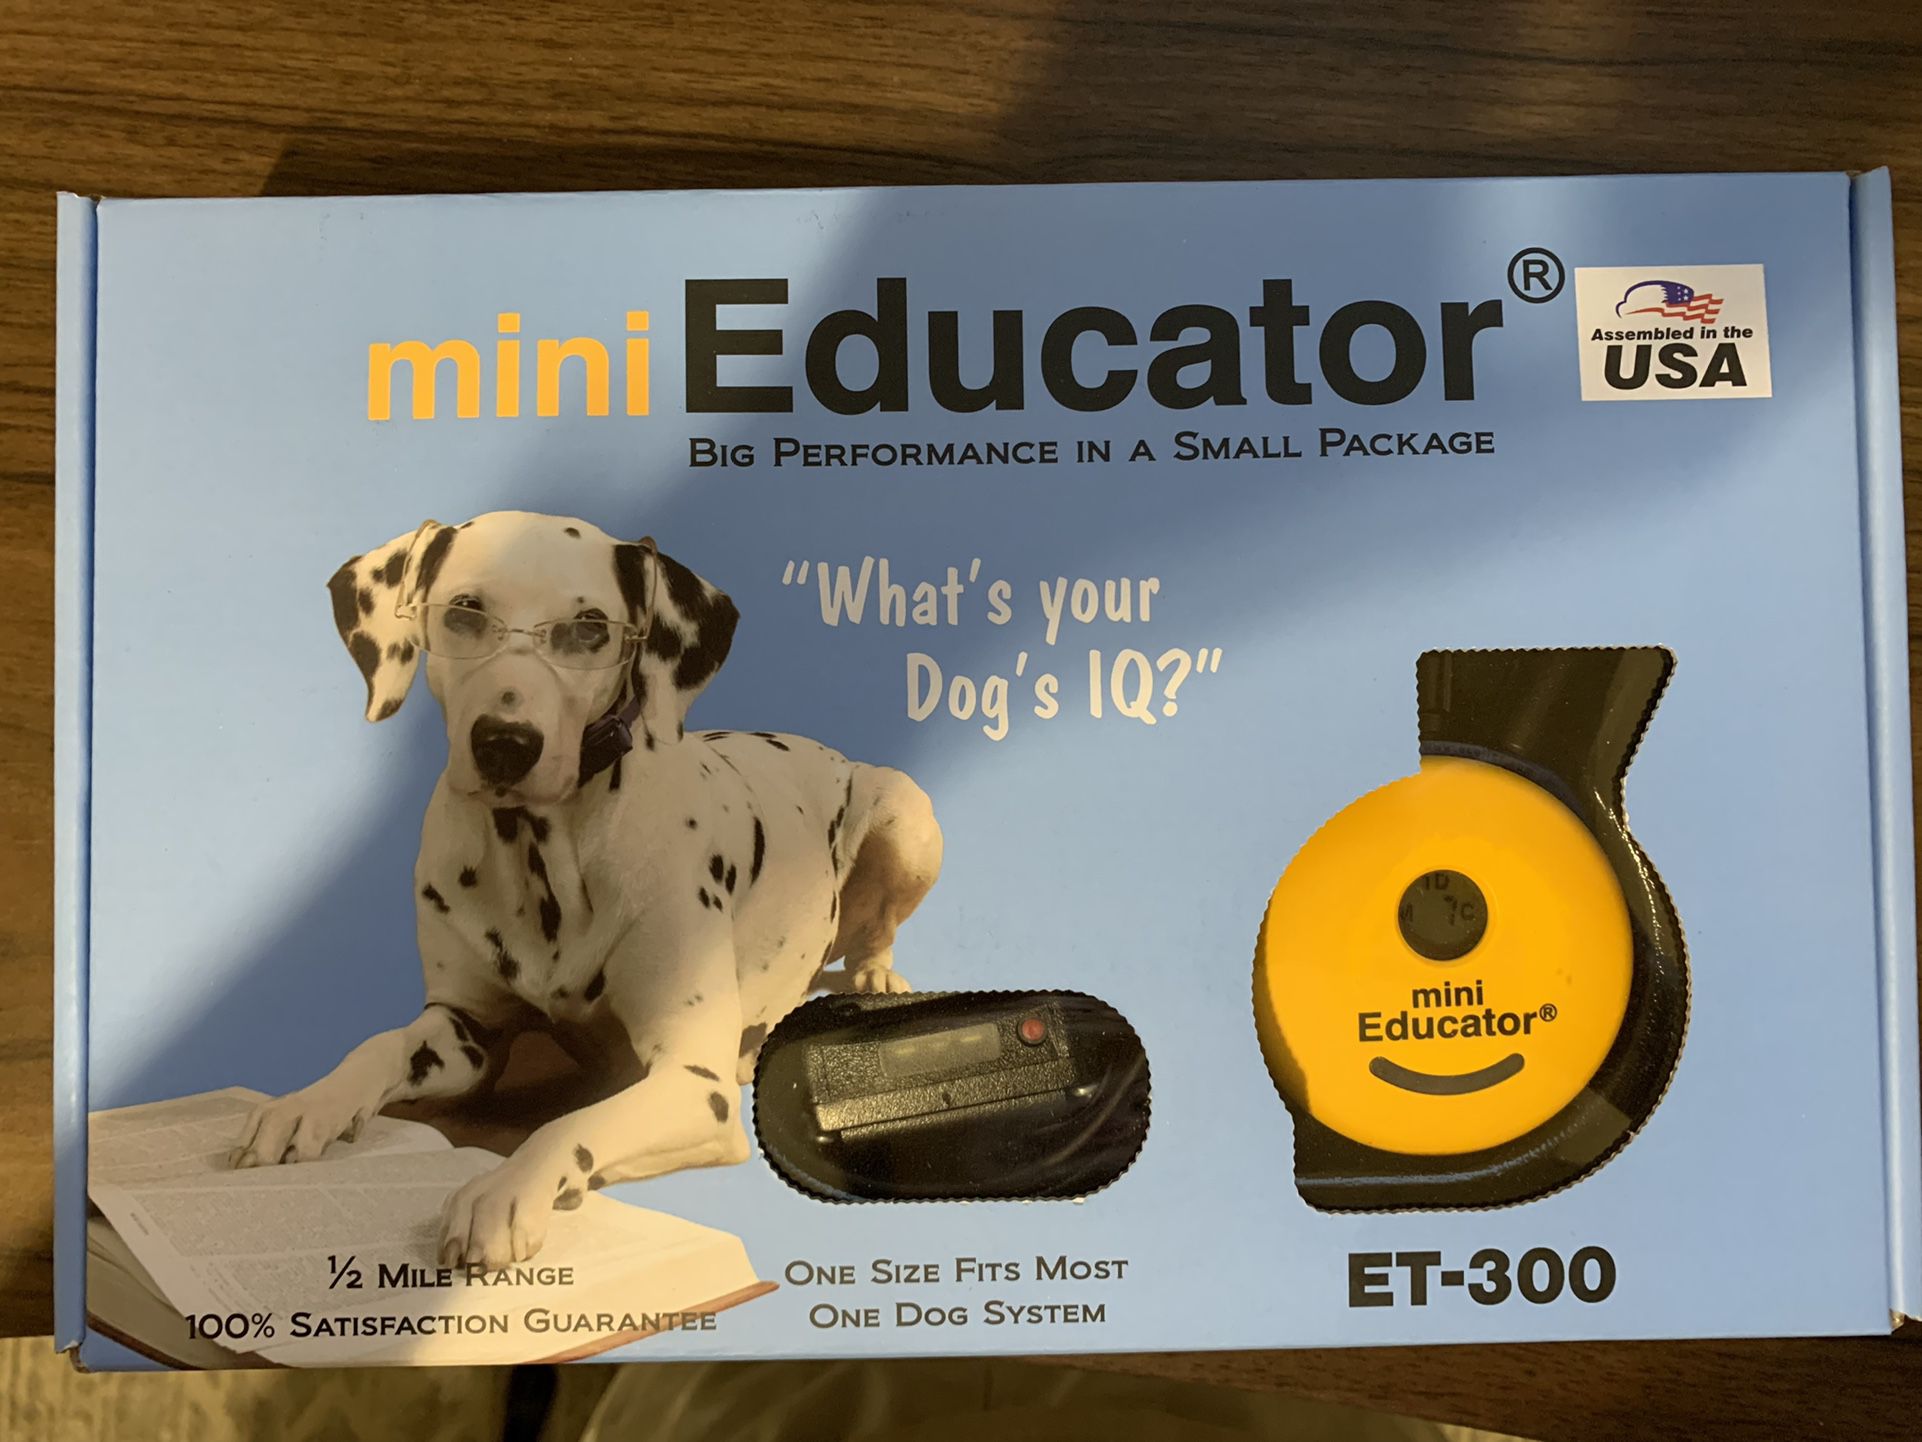 Educator E-Collar Dog Training Collar